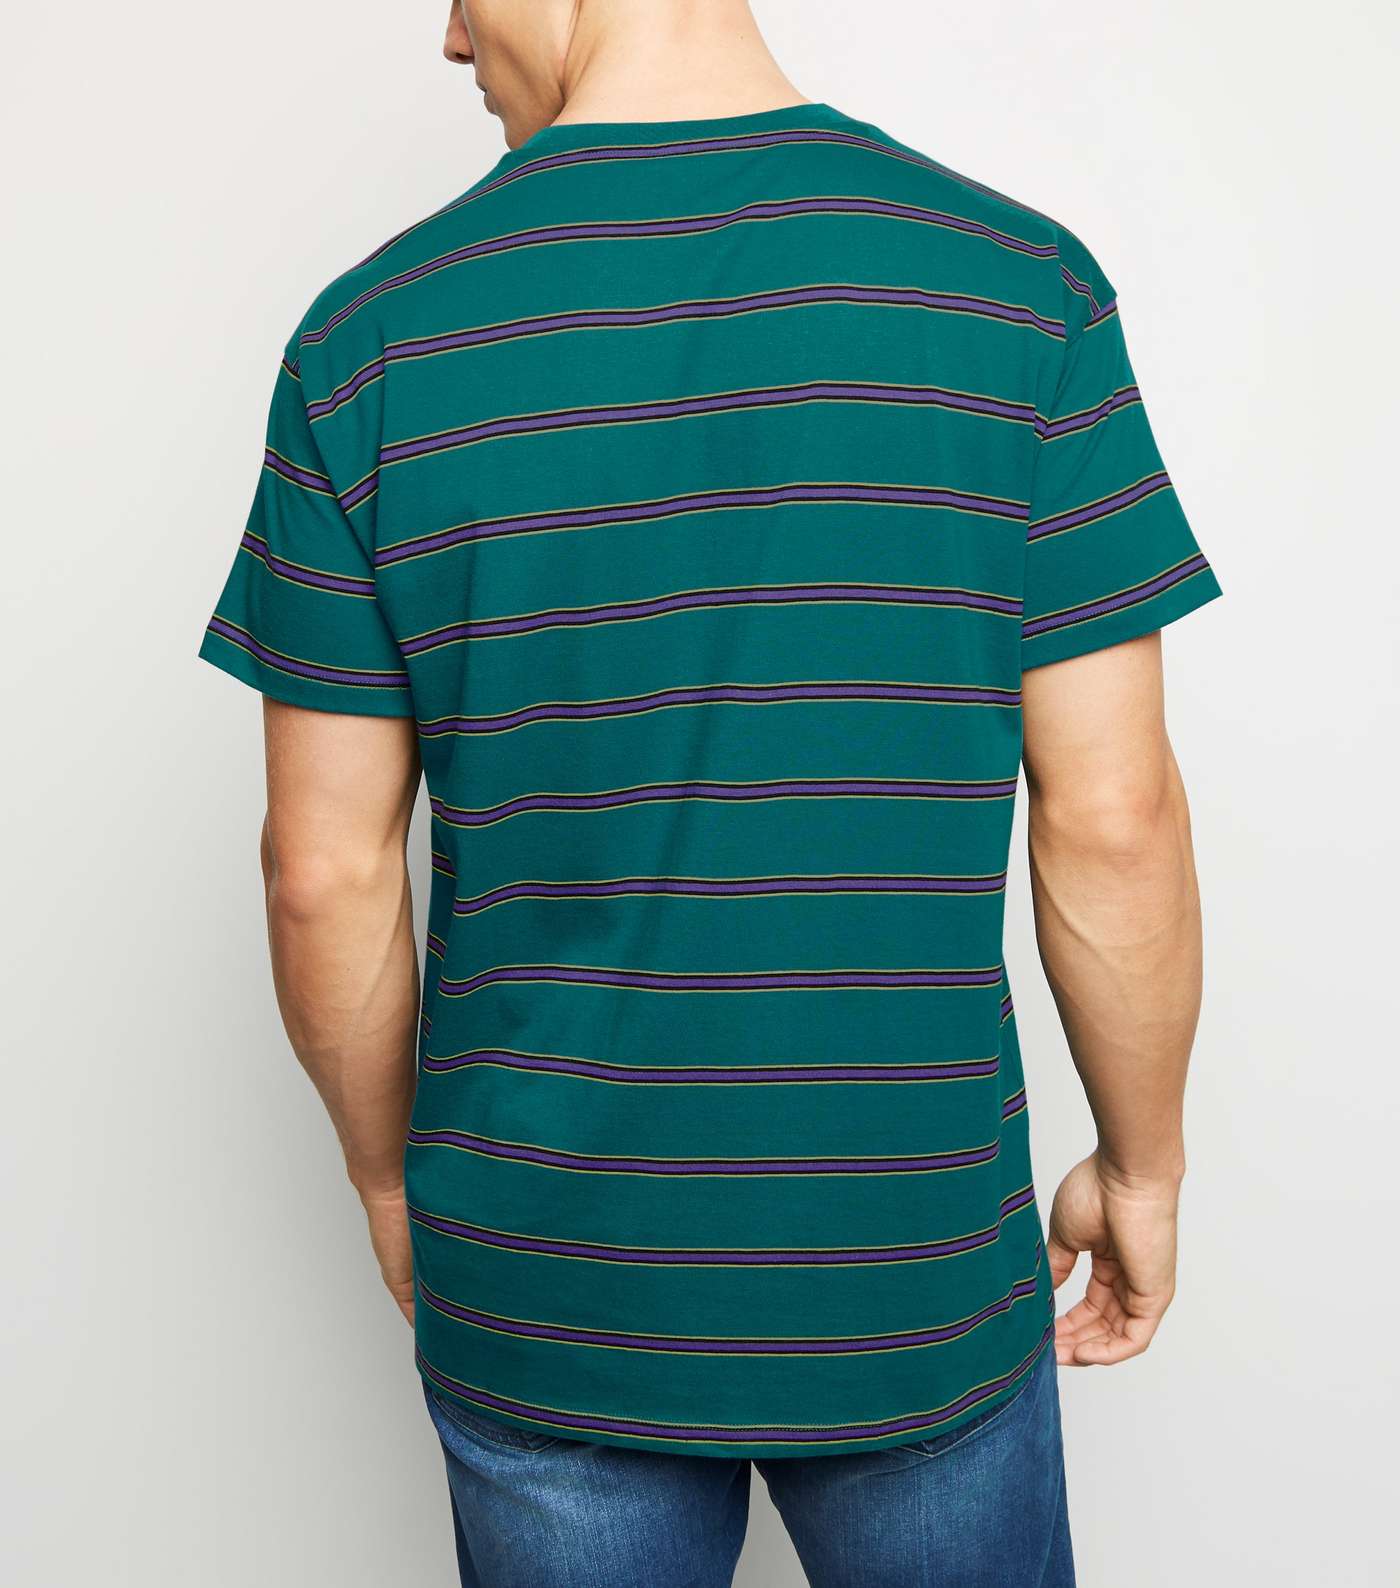 Teal Stripe Crew T-Shirt Image 3